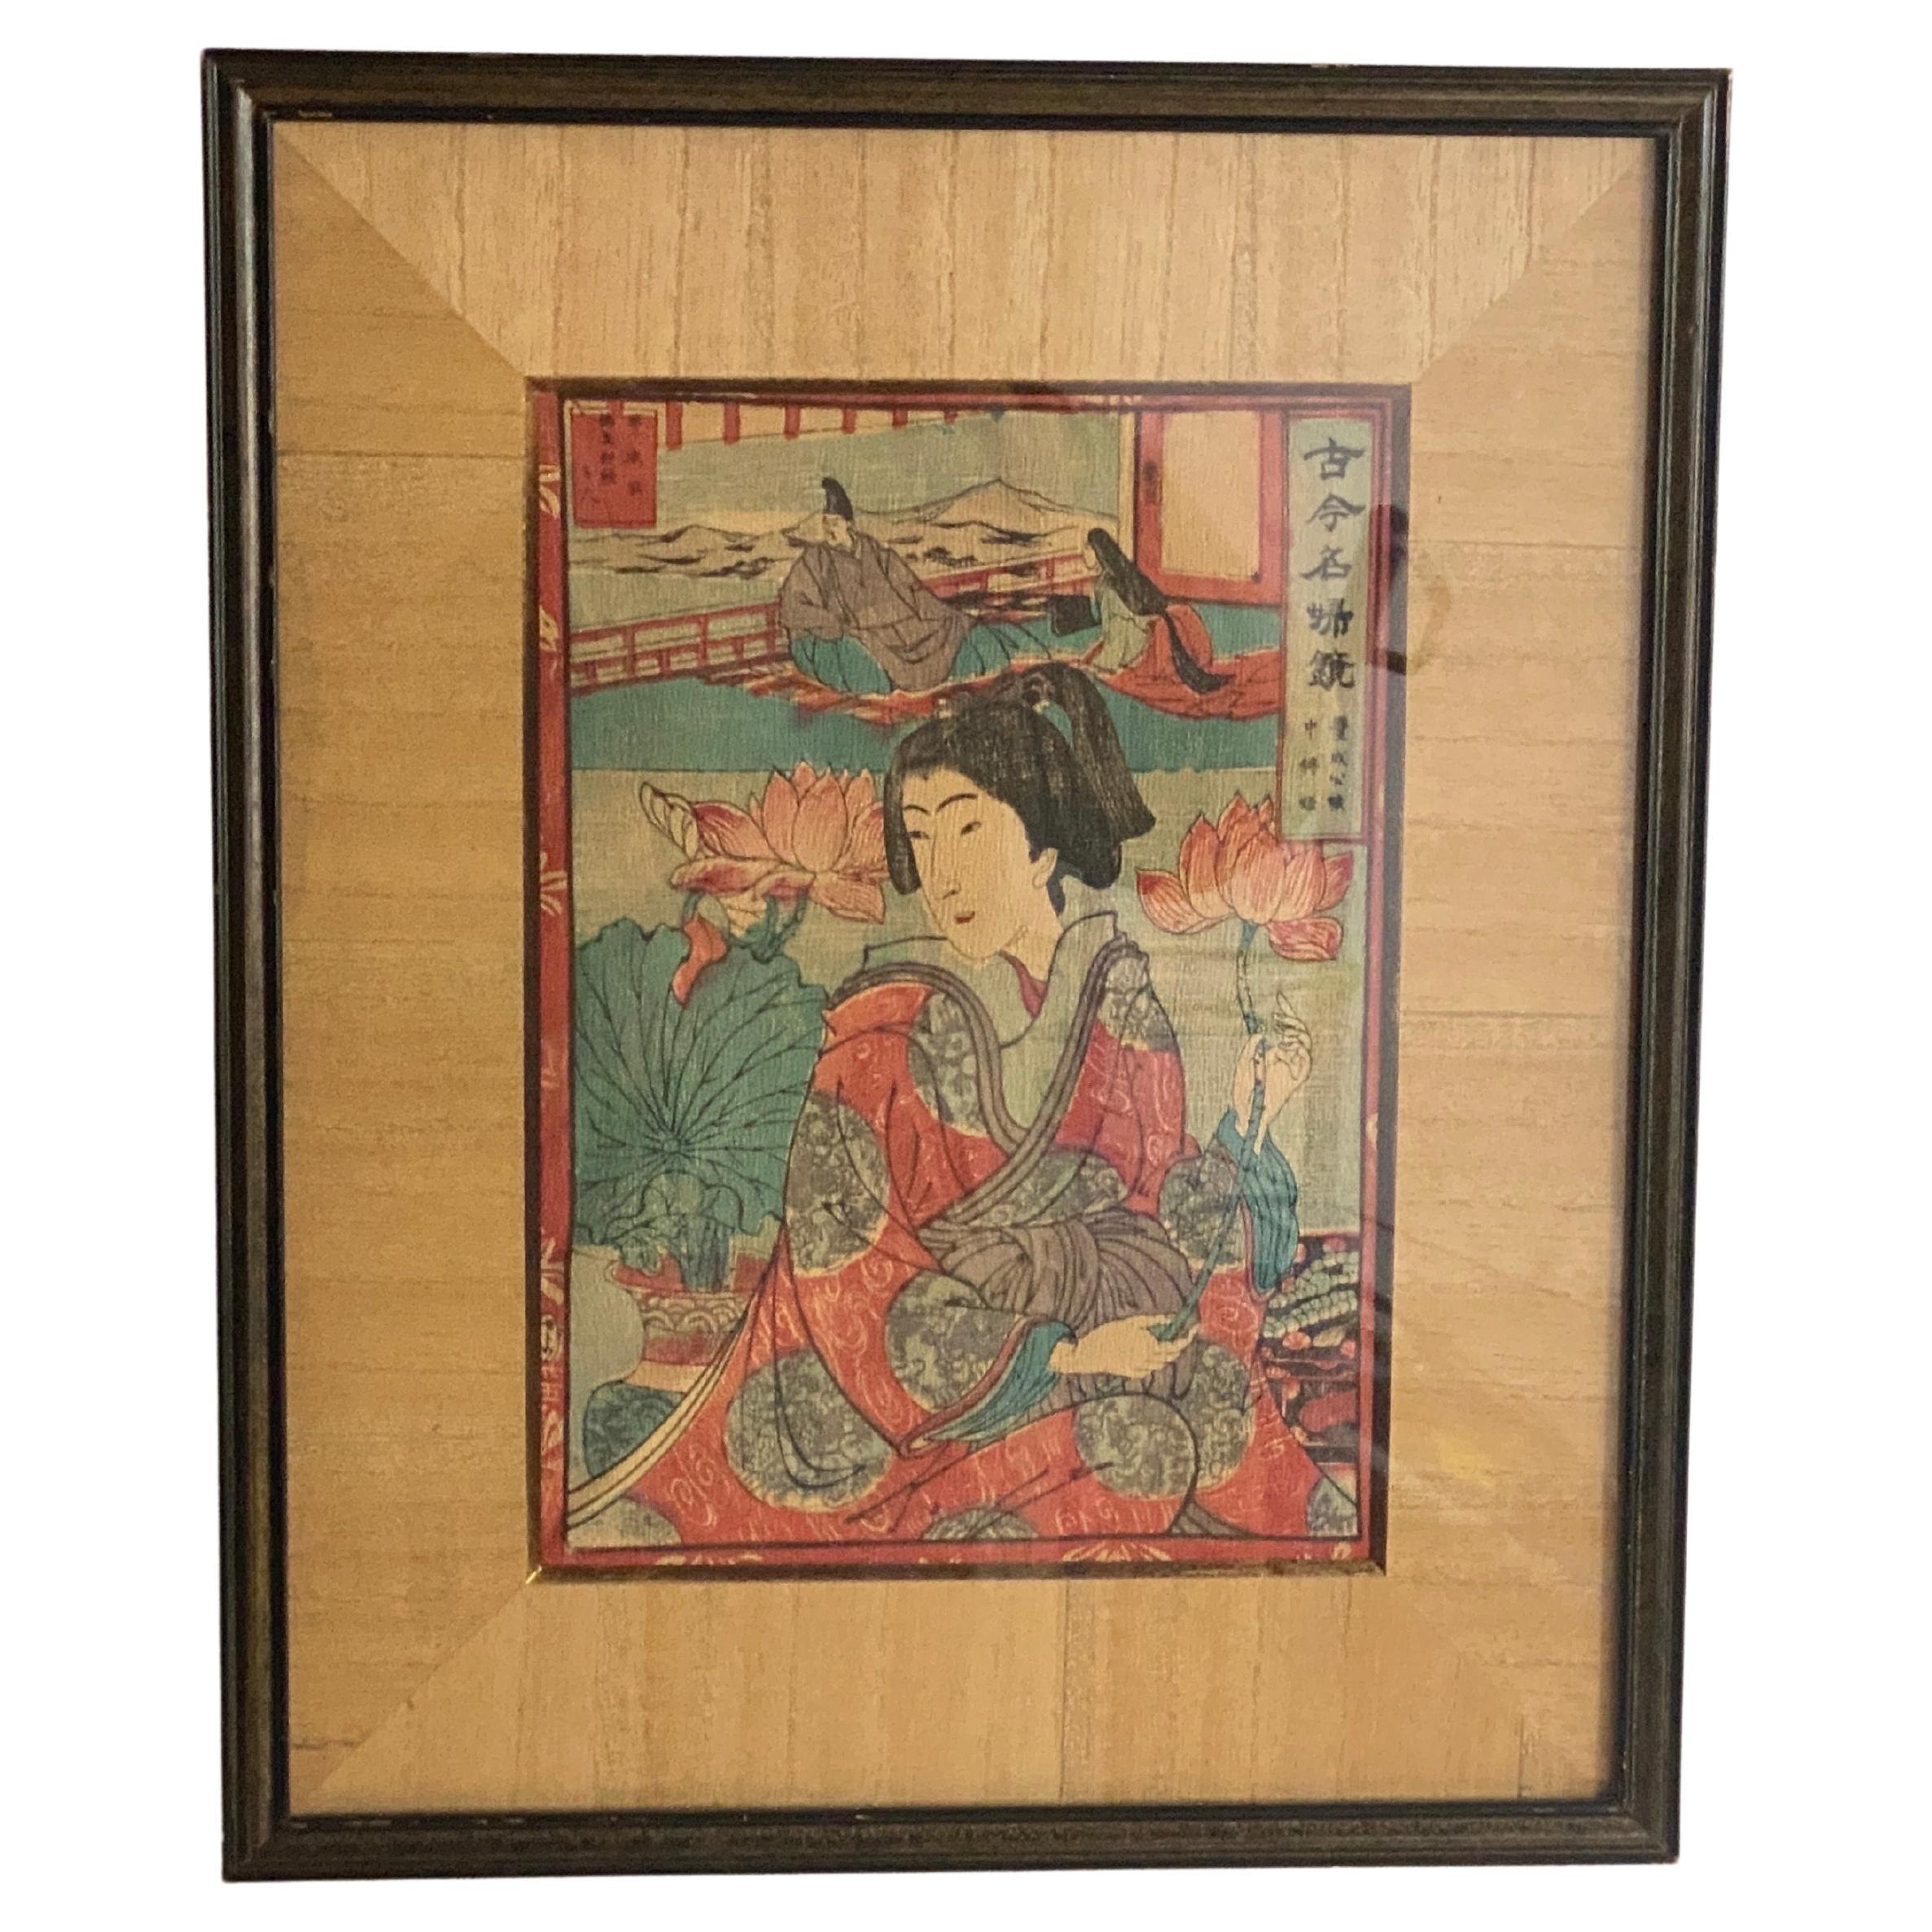 Impression sur bois japonaise originale de l'artiste japonais 19ème siècle